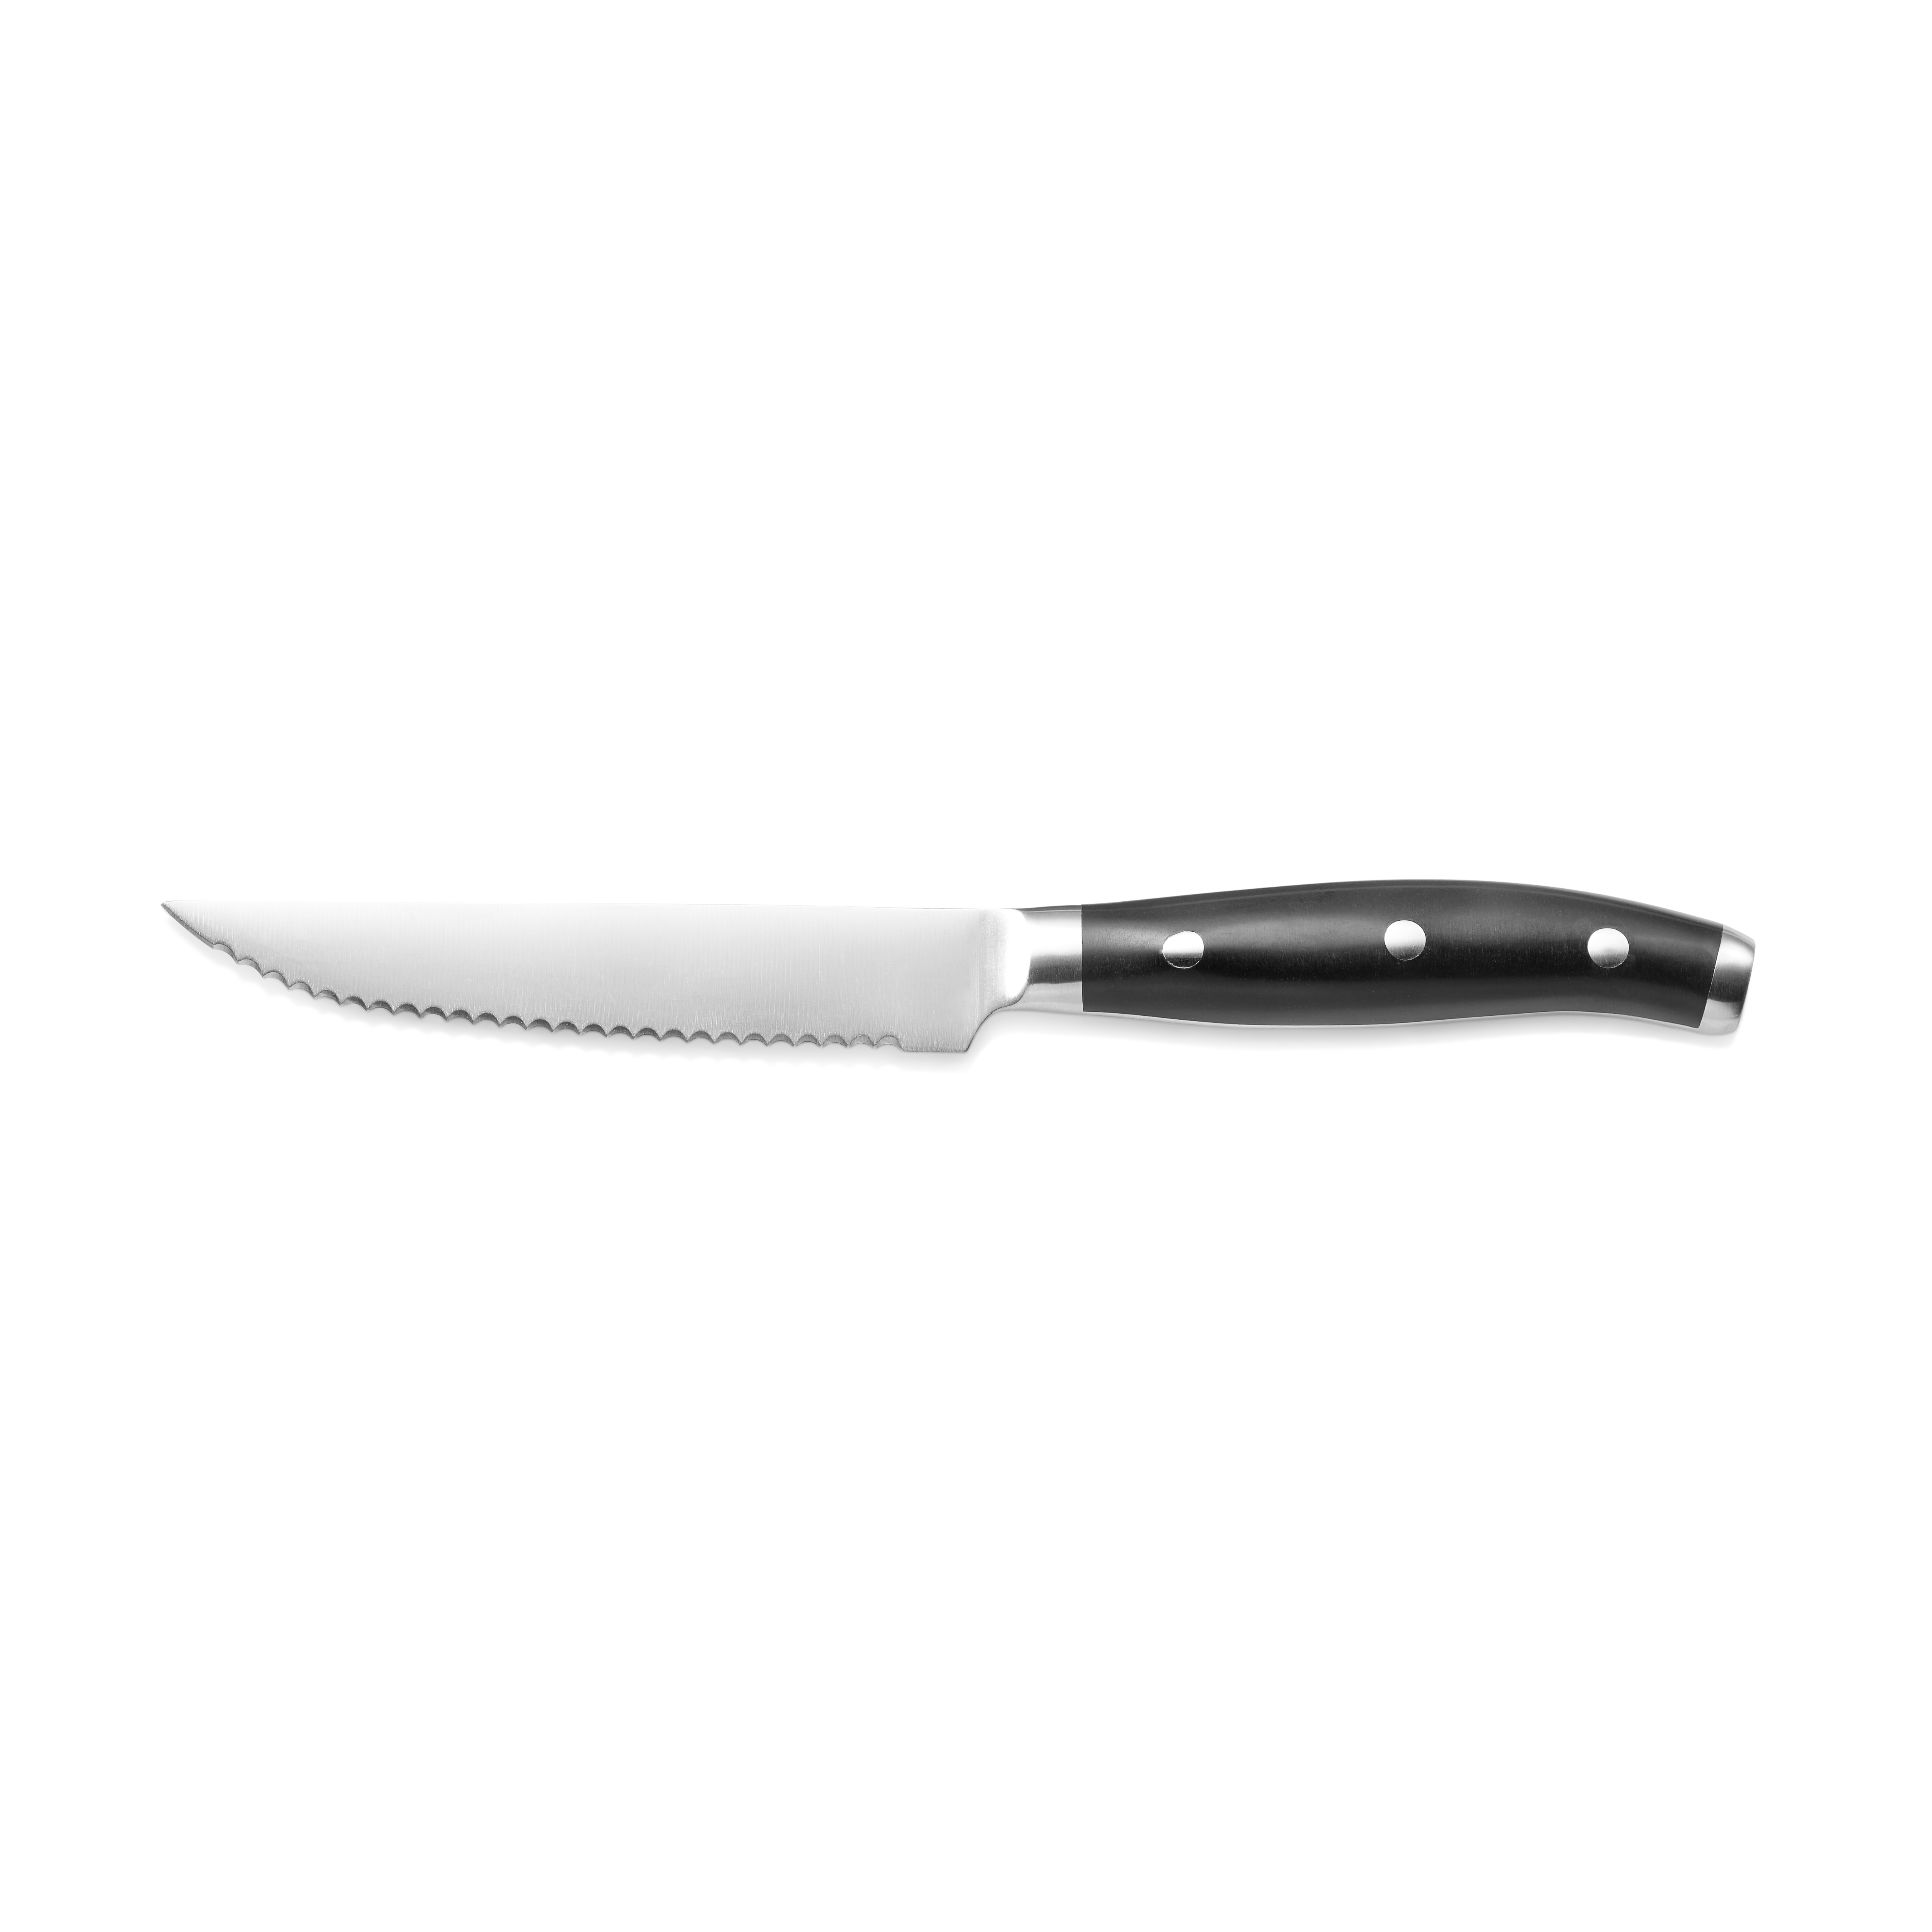 Steakmesser mit ABS Kunststoffgriff, 12,5 cm, Set á 12 Stück, Edelstahl